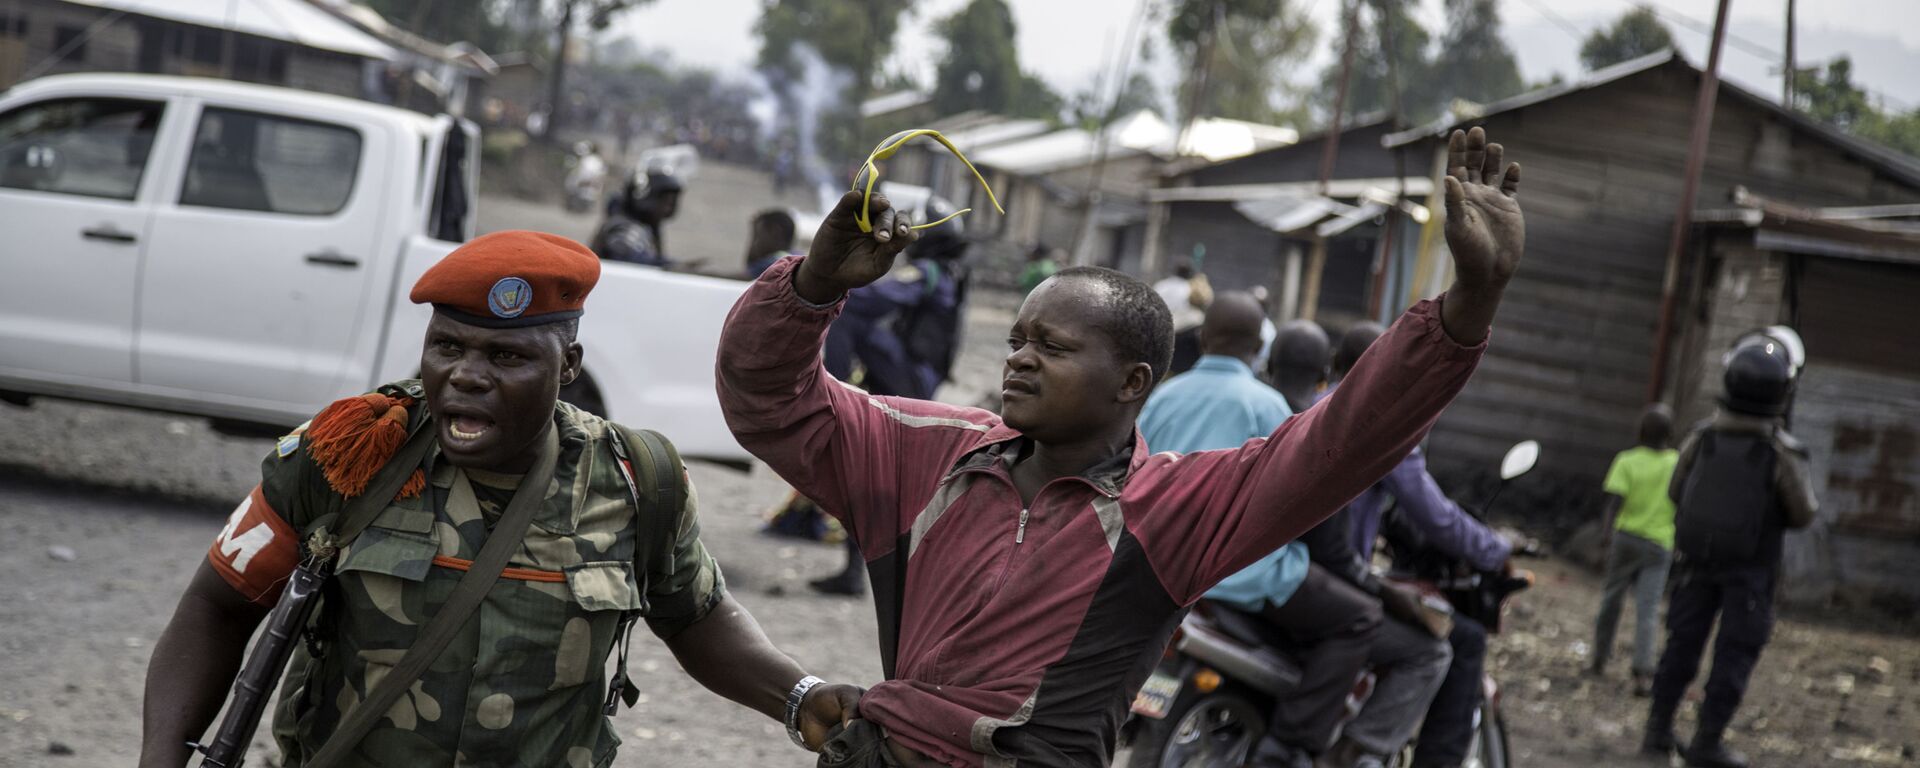 ضابط يلقي القبض على رجل حاول إغلاق الطريق بالحجارة، في حي ماجينغو في غوما، شرق جمهورية الكونغو الديمقراطية، في 19 ديسمبر/ كانون الأول عام 2016، - سبوتنيك عربي, 1920, 09.06.2022